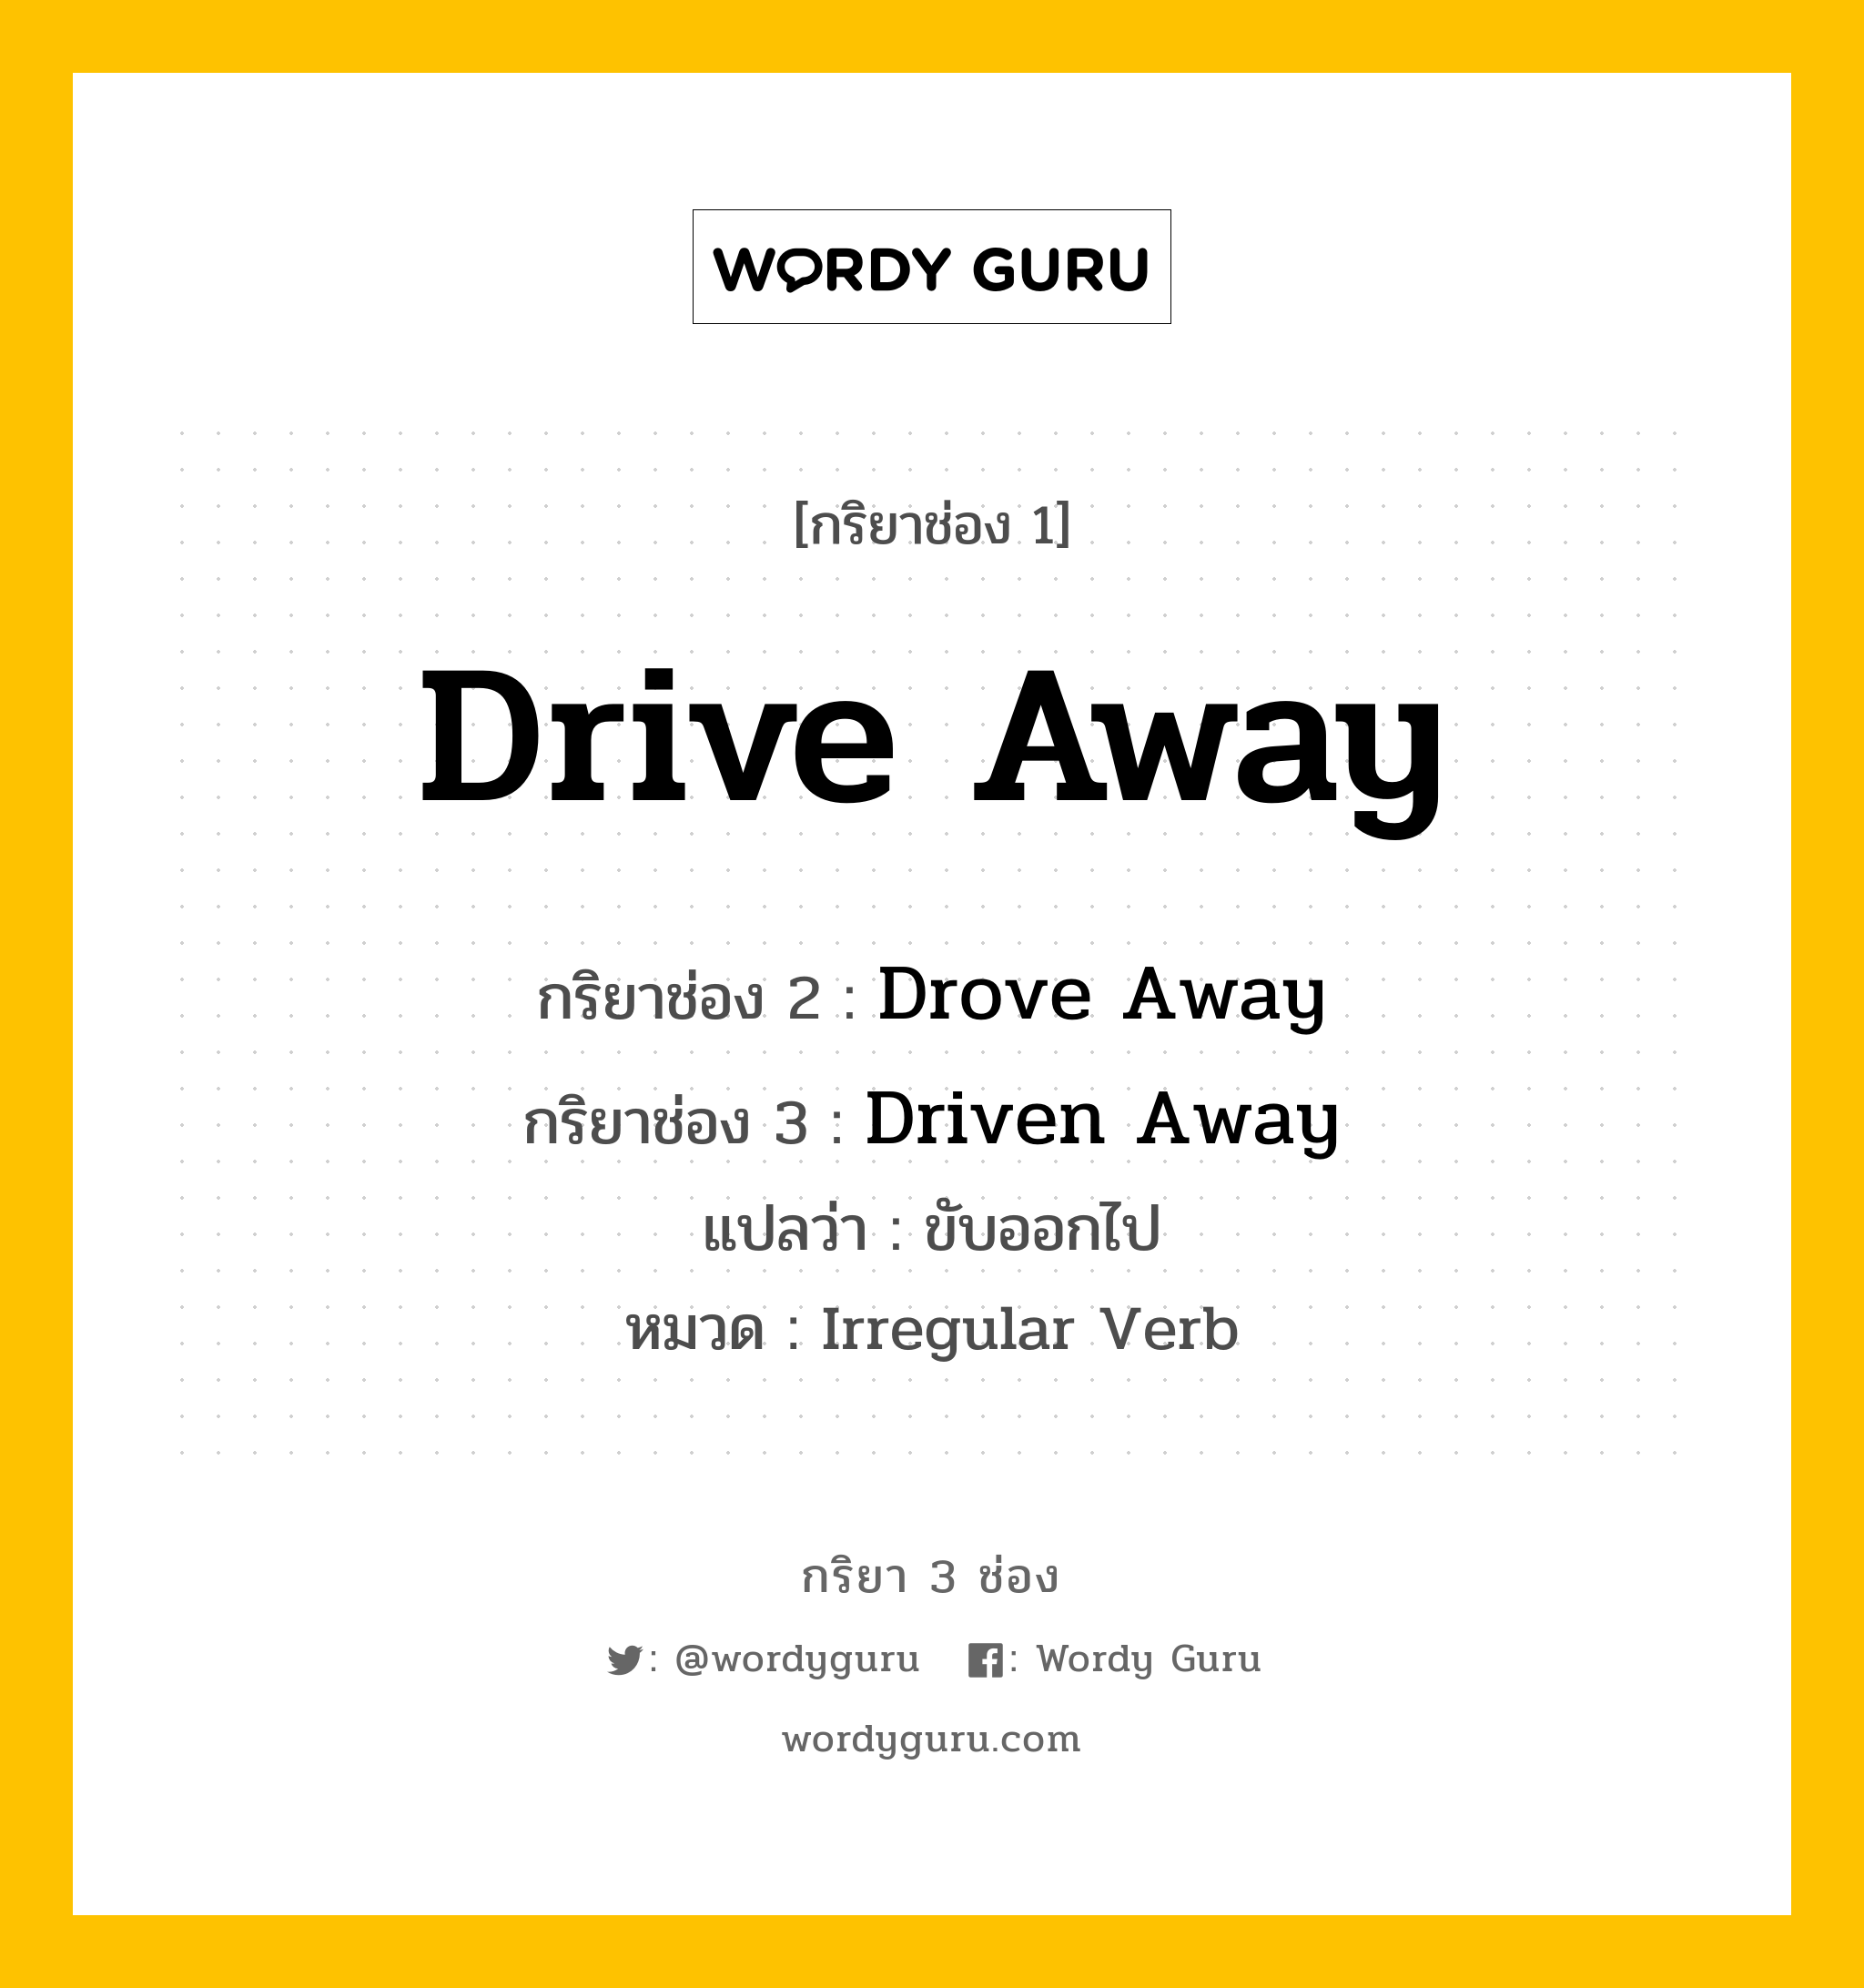 กริยา 3 ช่อง: Drive Away ช่อง 2 Drive Away ช่อง 3 คืออะไร, กริยาช่อง 1 Drive Away กริยาช่อง 2 Drove Away กริยาช่อง 3 Driven Away แปลว่า ขับออกไป หมวด Irregular Verb หมวด Irregular Verb